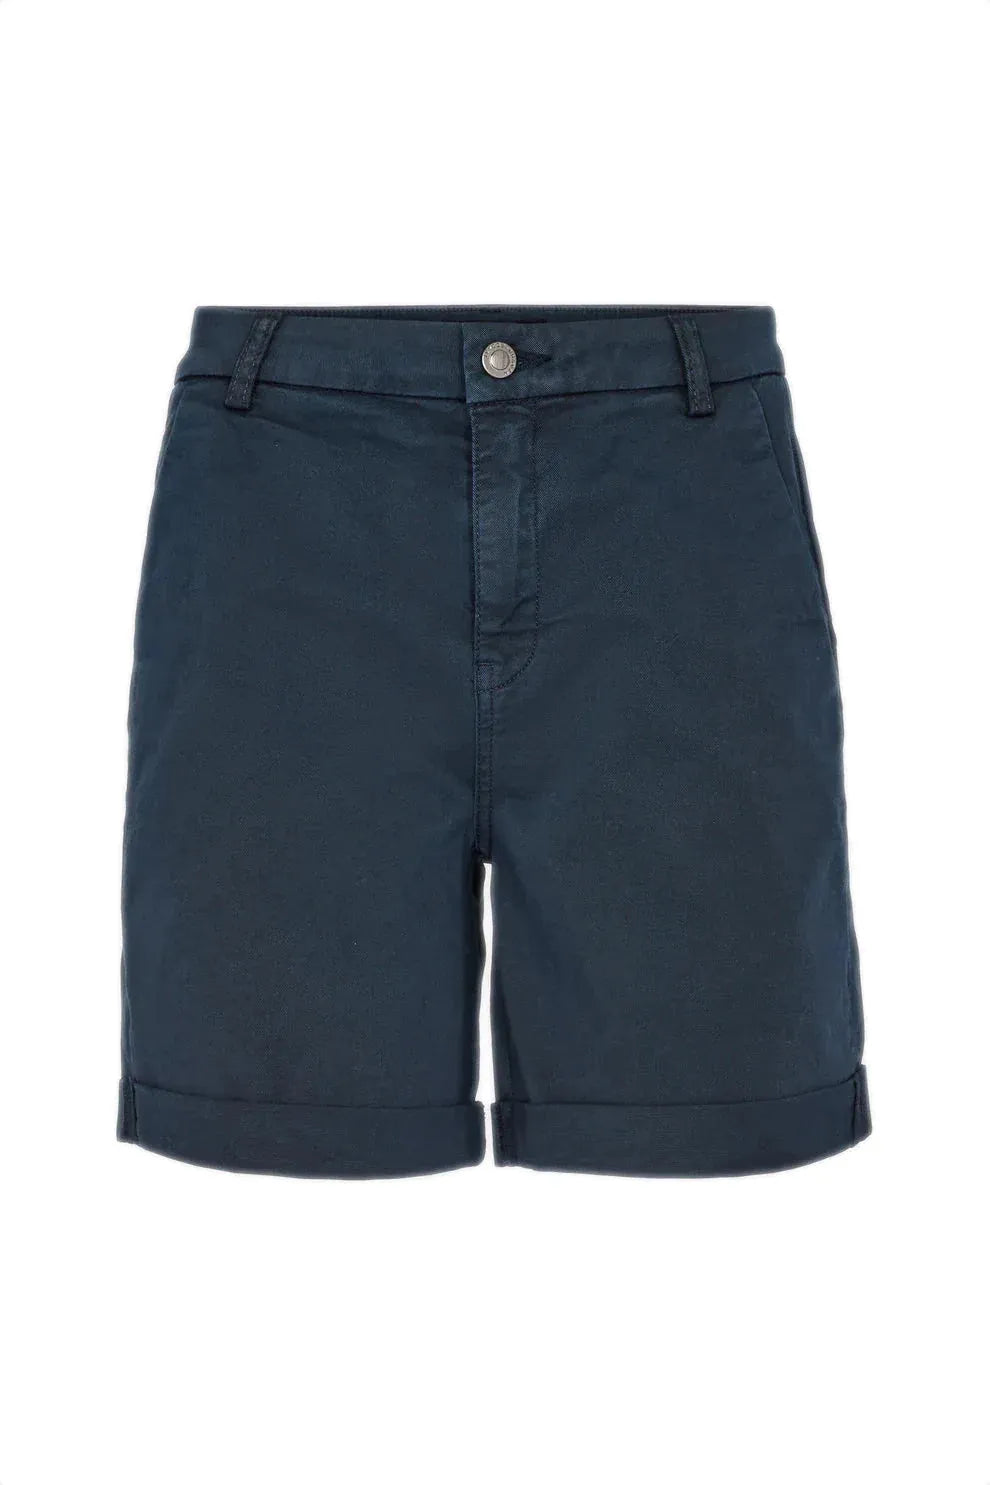 Shorts | IVY COPENHAGEN Chino Karmey shorts, navy